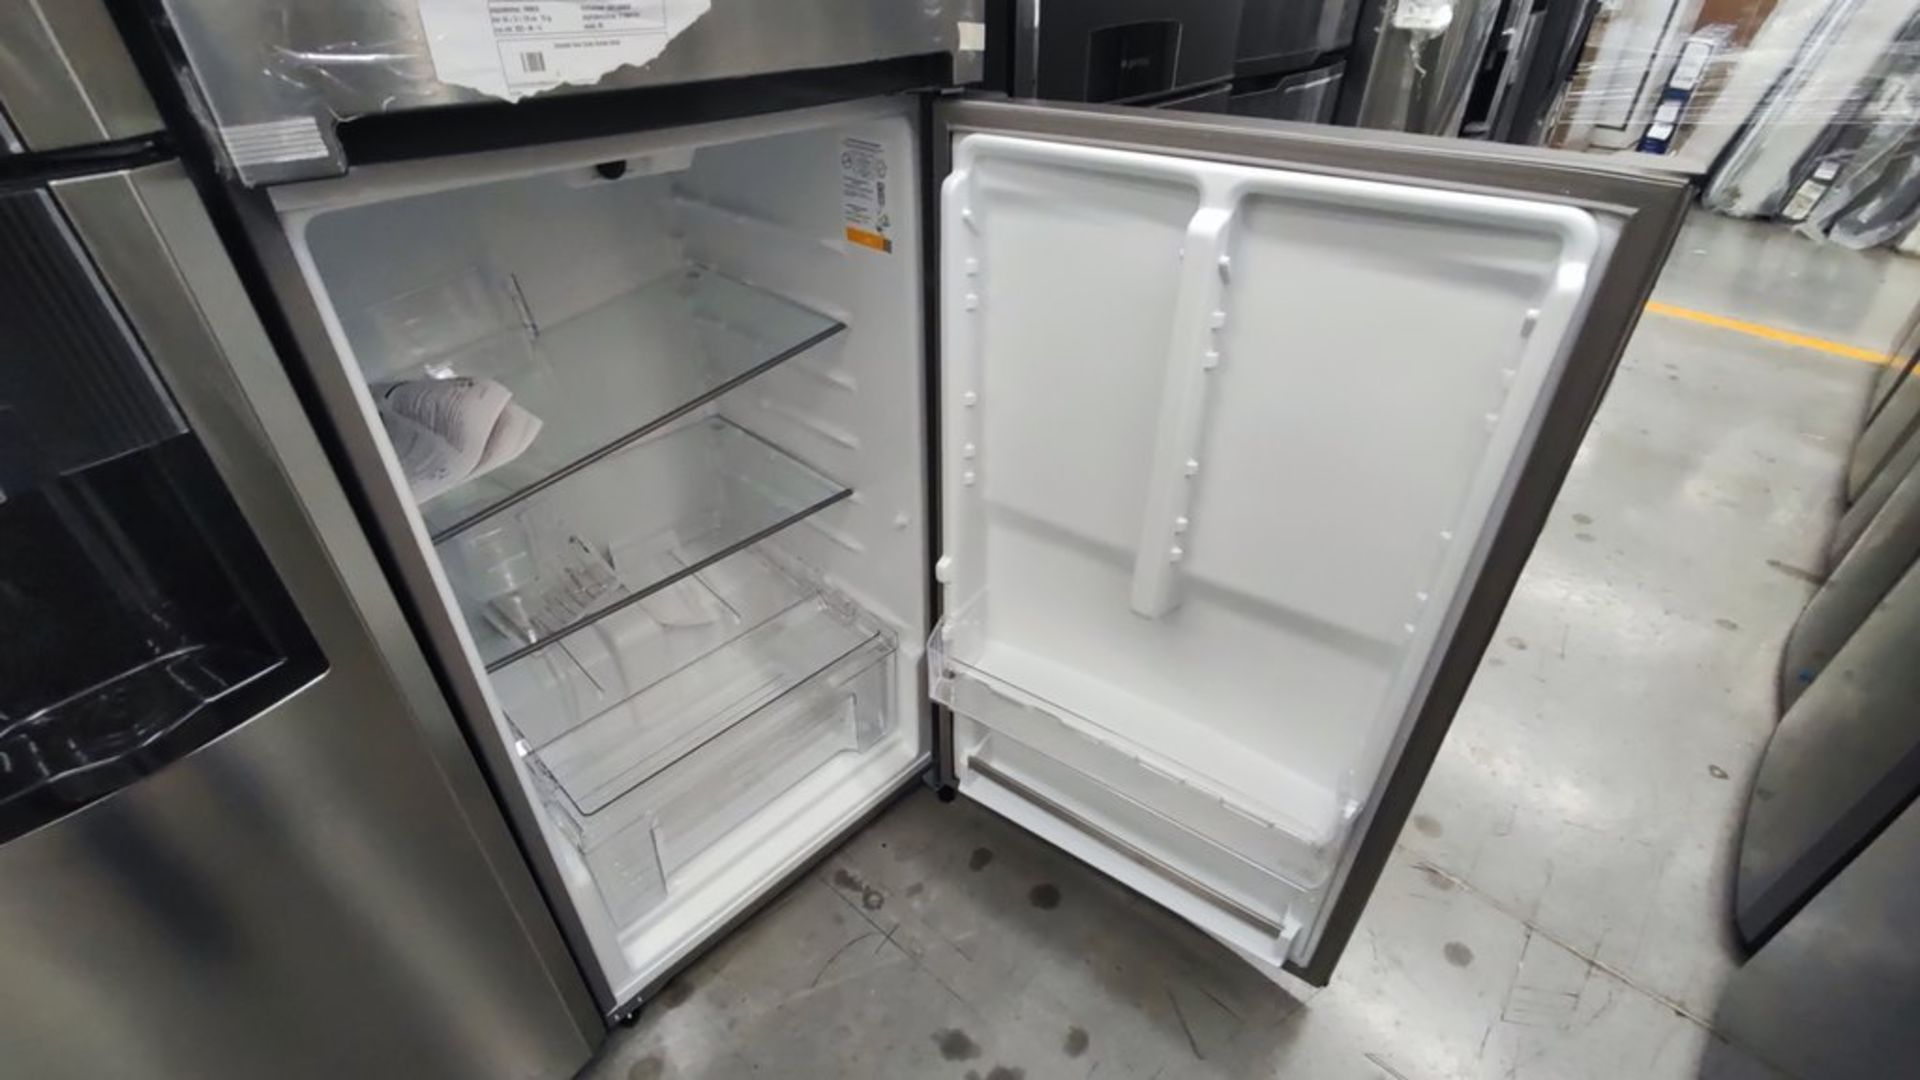 Lote de 2 Refrigeradores contiene: 1 Refrigerador Marca Whirlpool, Modelo WT1818A01, No de Serie VS - Image 10 of 15